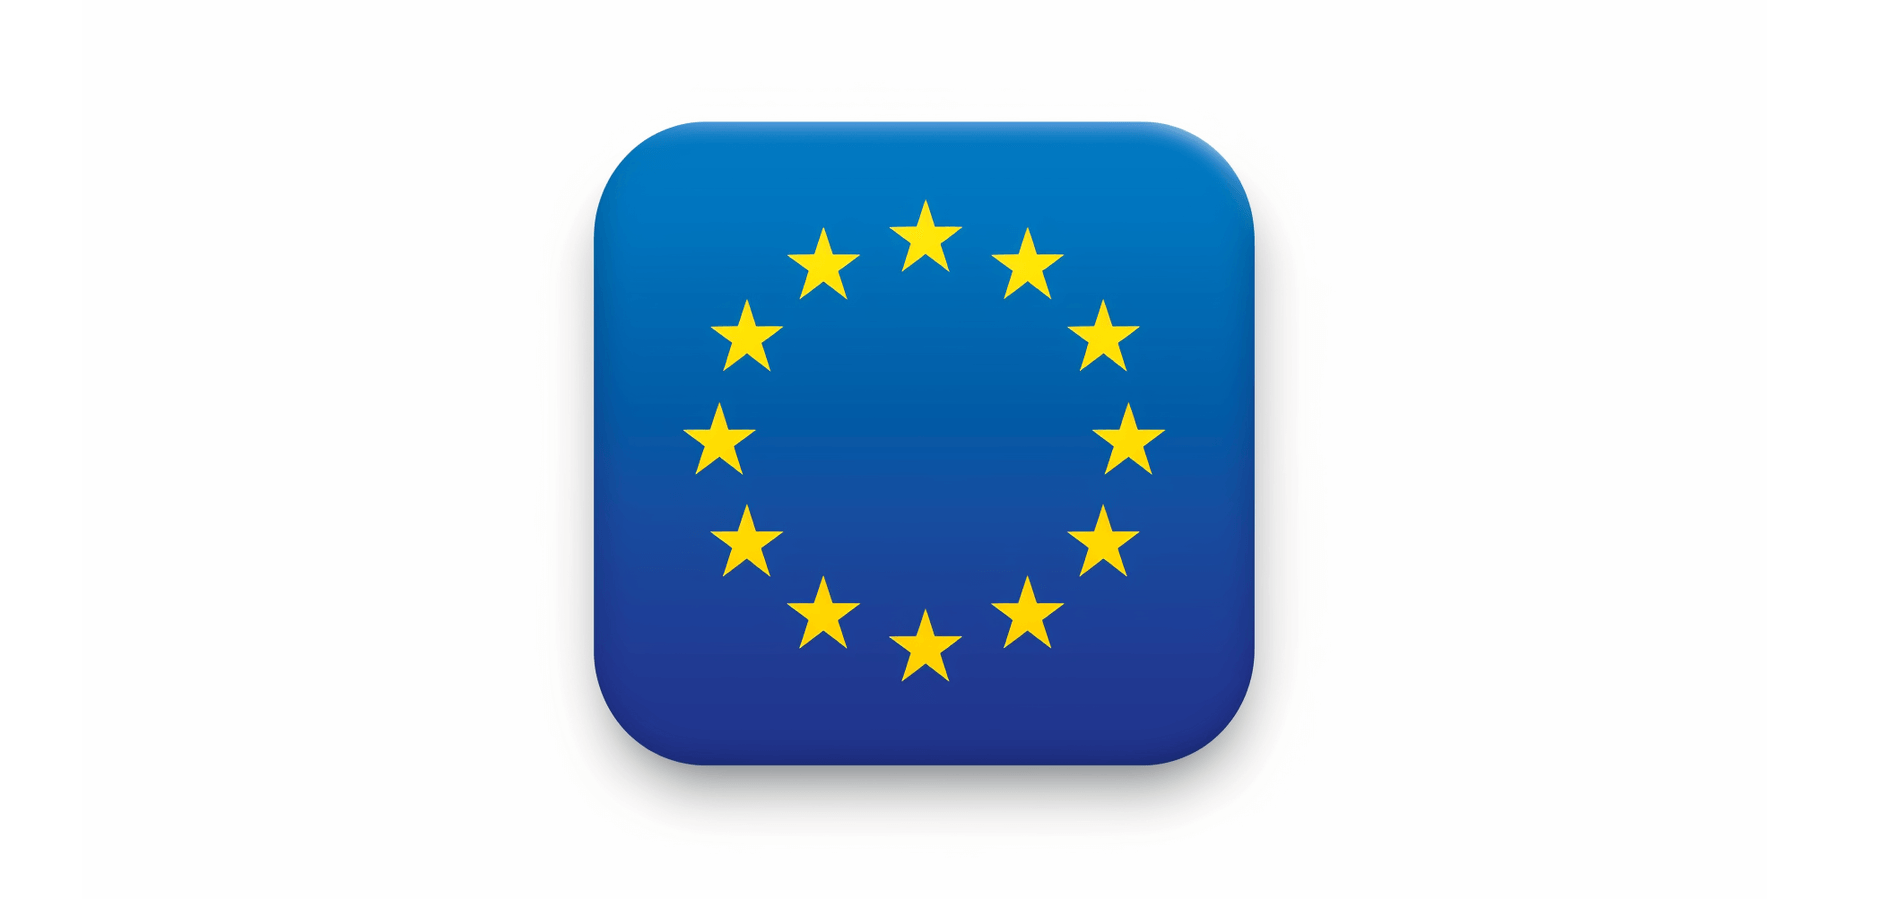 Das Bild zeigt eine rechteckige Flagge mit einem dunkelblauen Hintergrund und zwölf goldenen Sternen, die in einem Kreis angeordnet sind. Dies ist das bekannte Symbol der Europäischen Union.